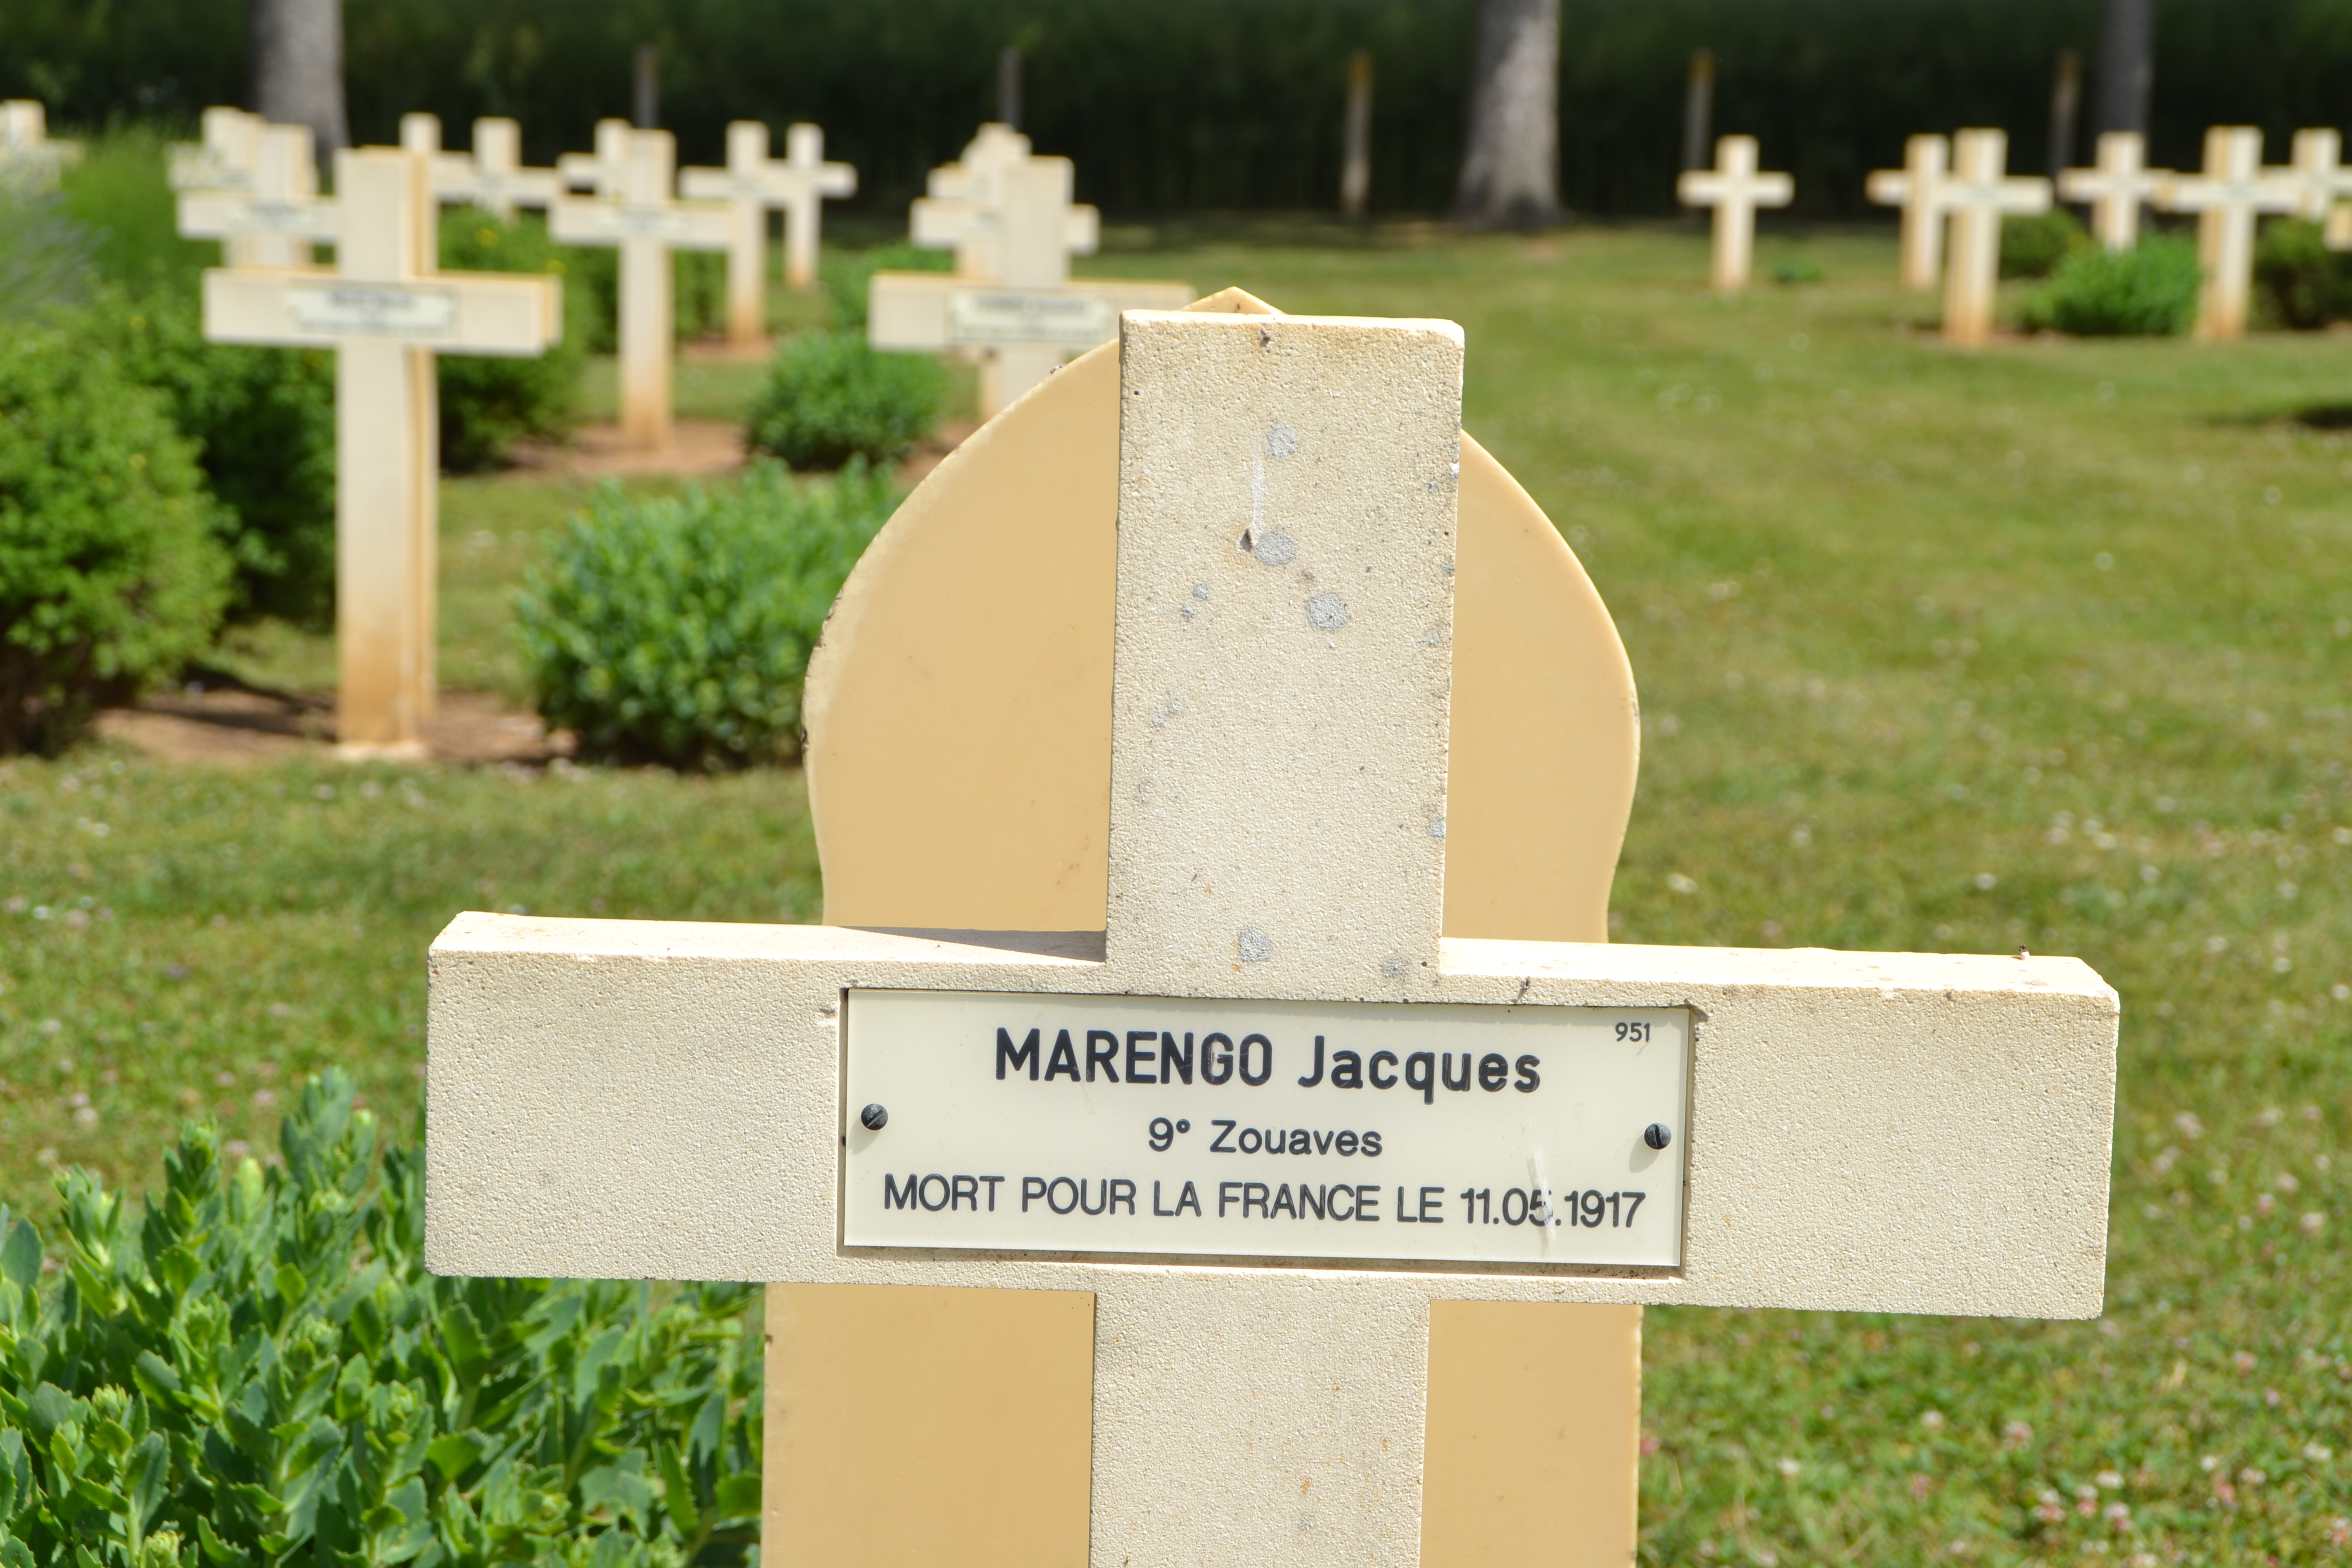 Marengo Jacques Antoine sépulture à Cerny-en-Laonnois (Aisne)